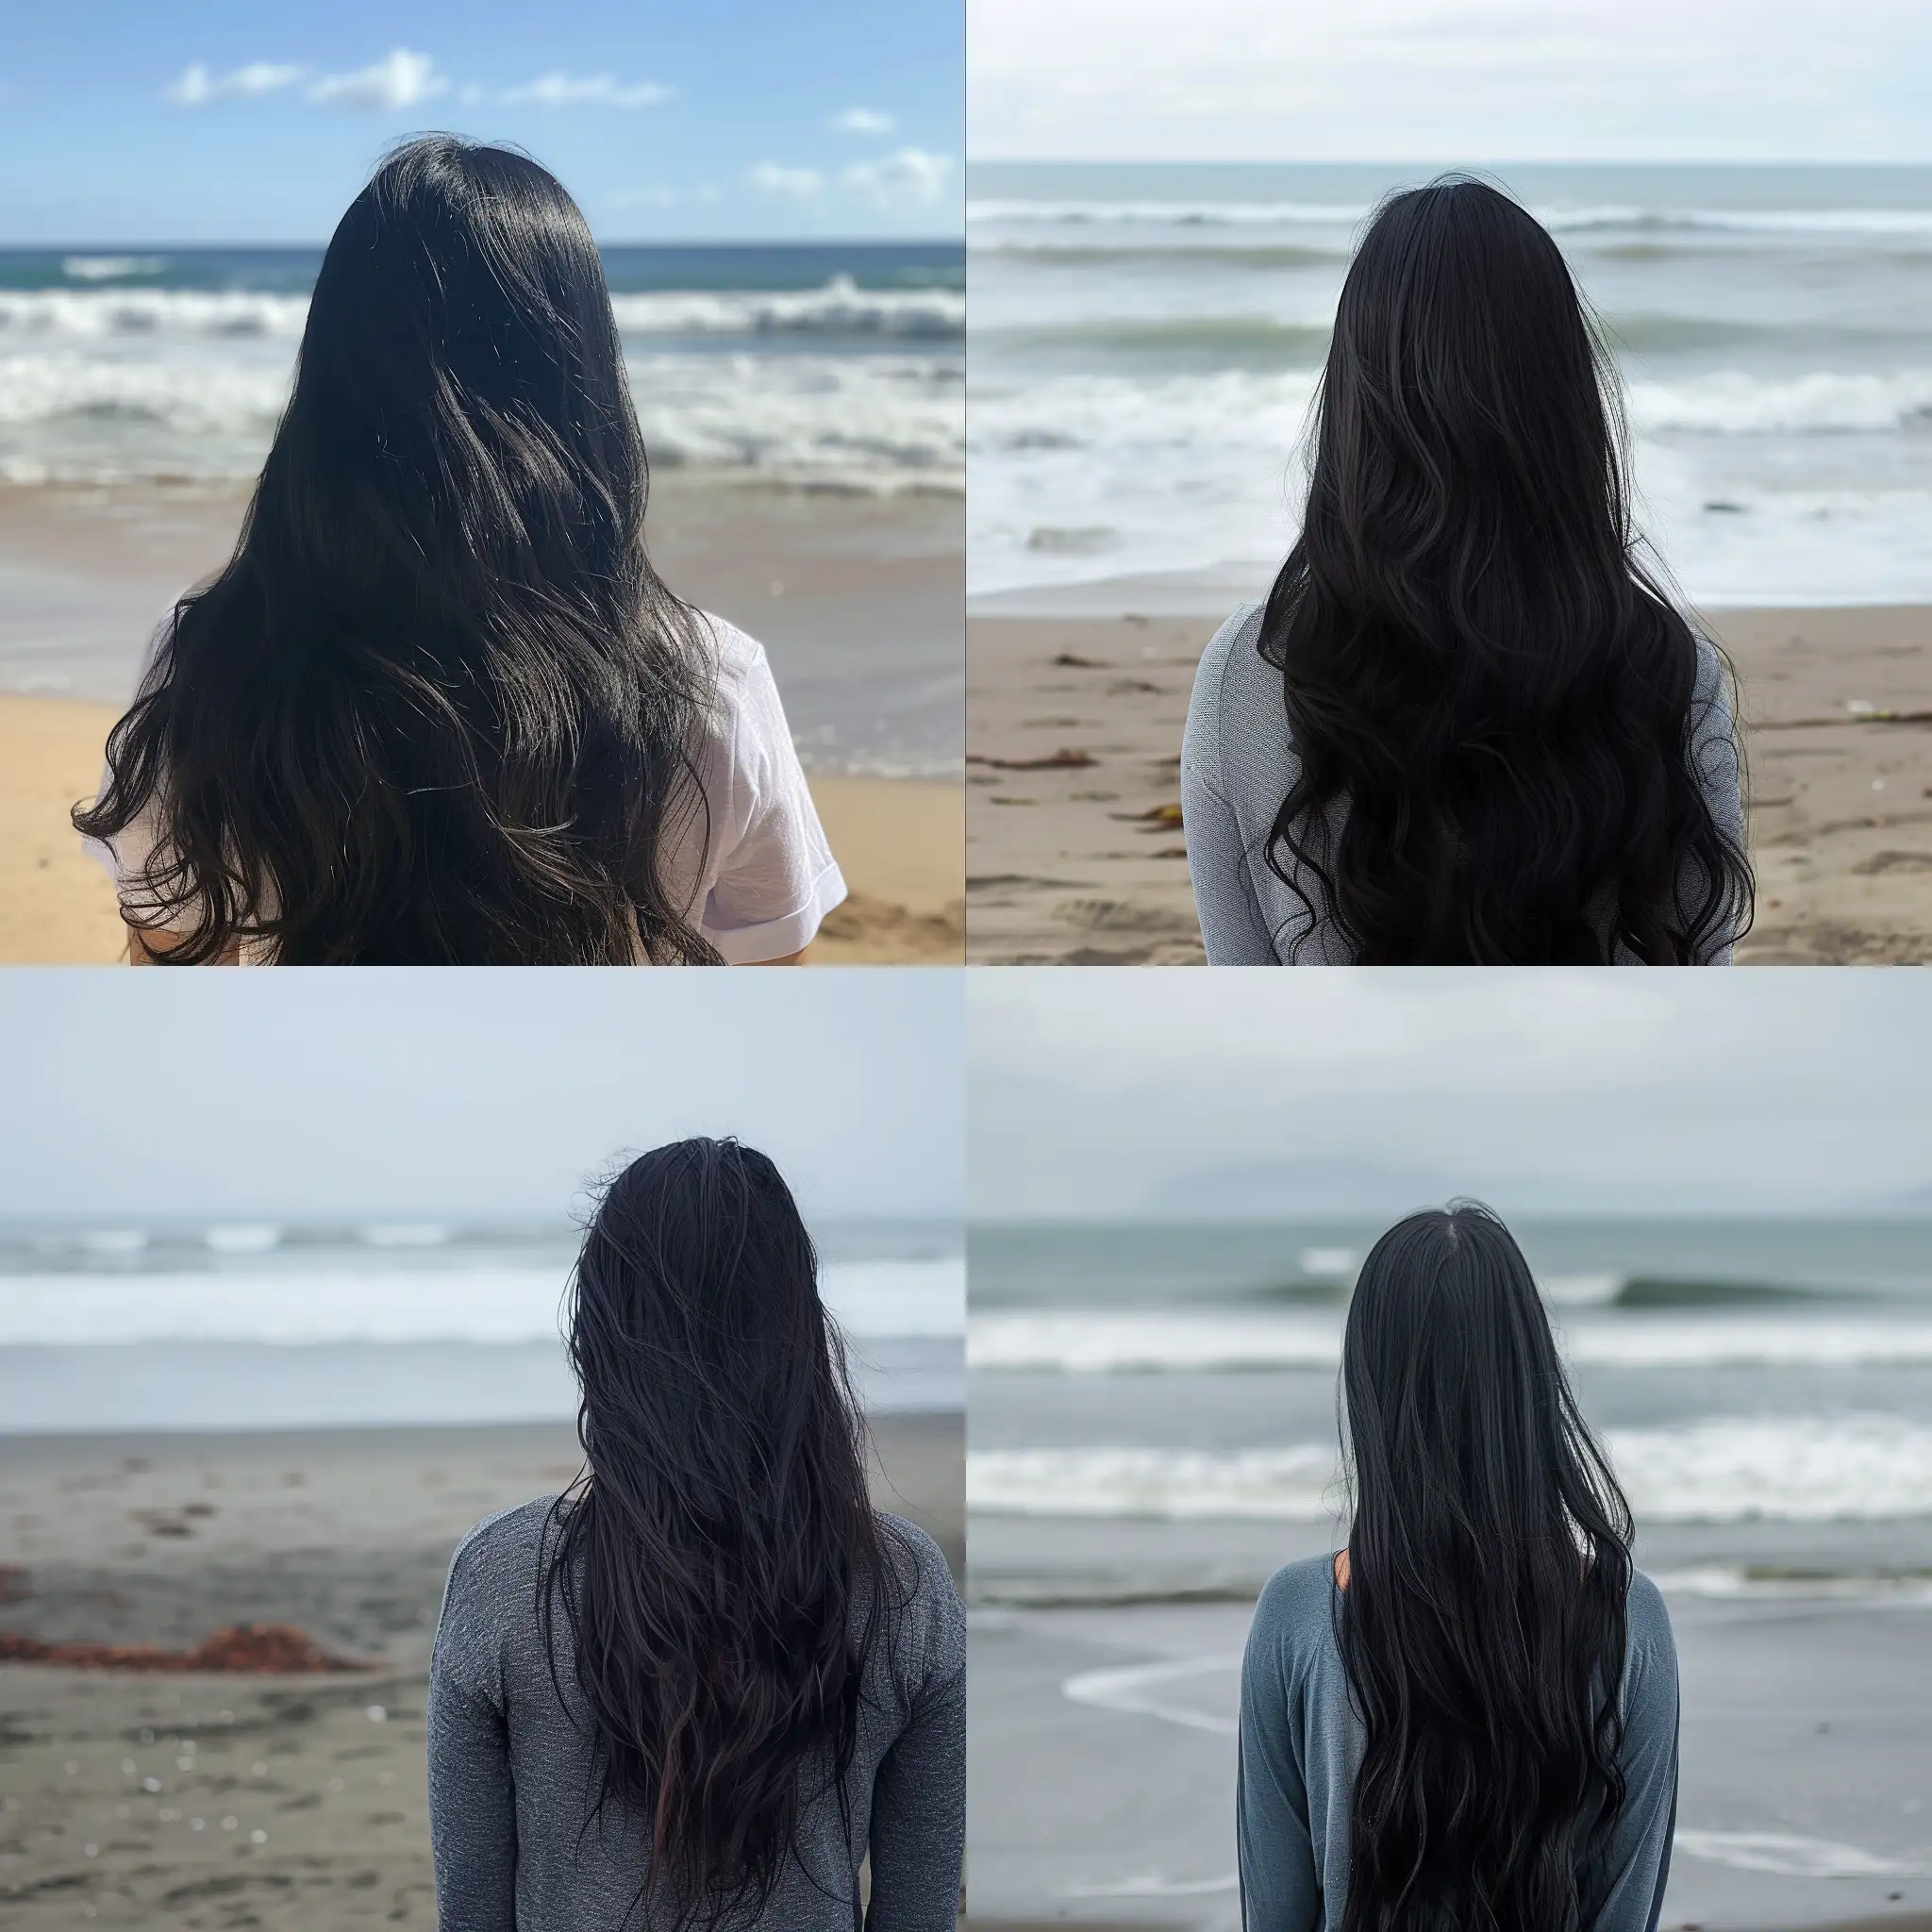 Solitude-Contemplative-Girl-Gazing-at-the-Ocean-on-a-Beach